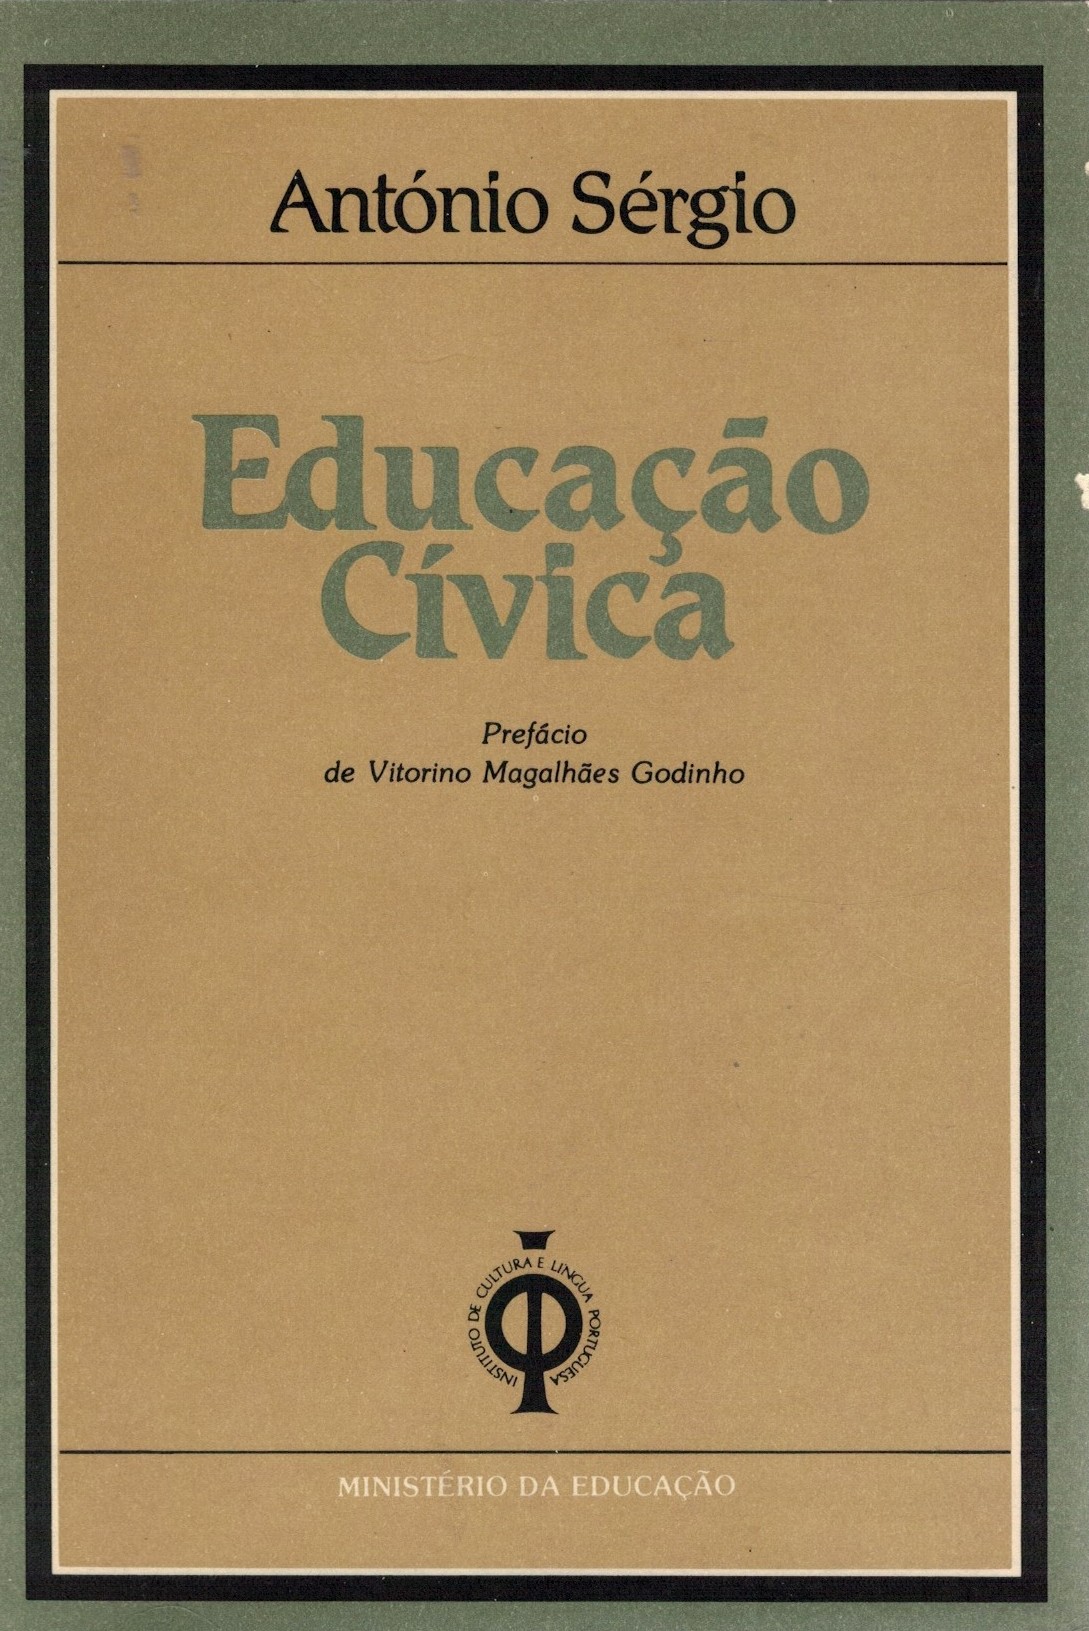 Educação Cívica de António Sérgio